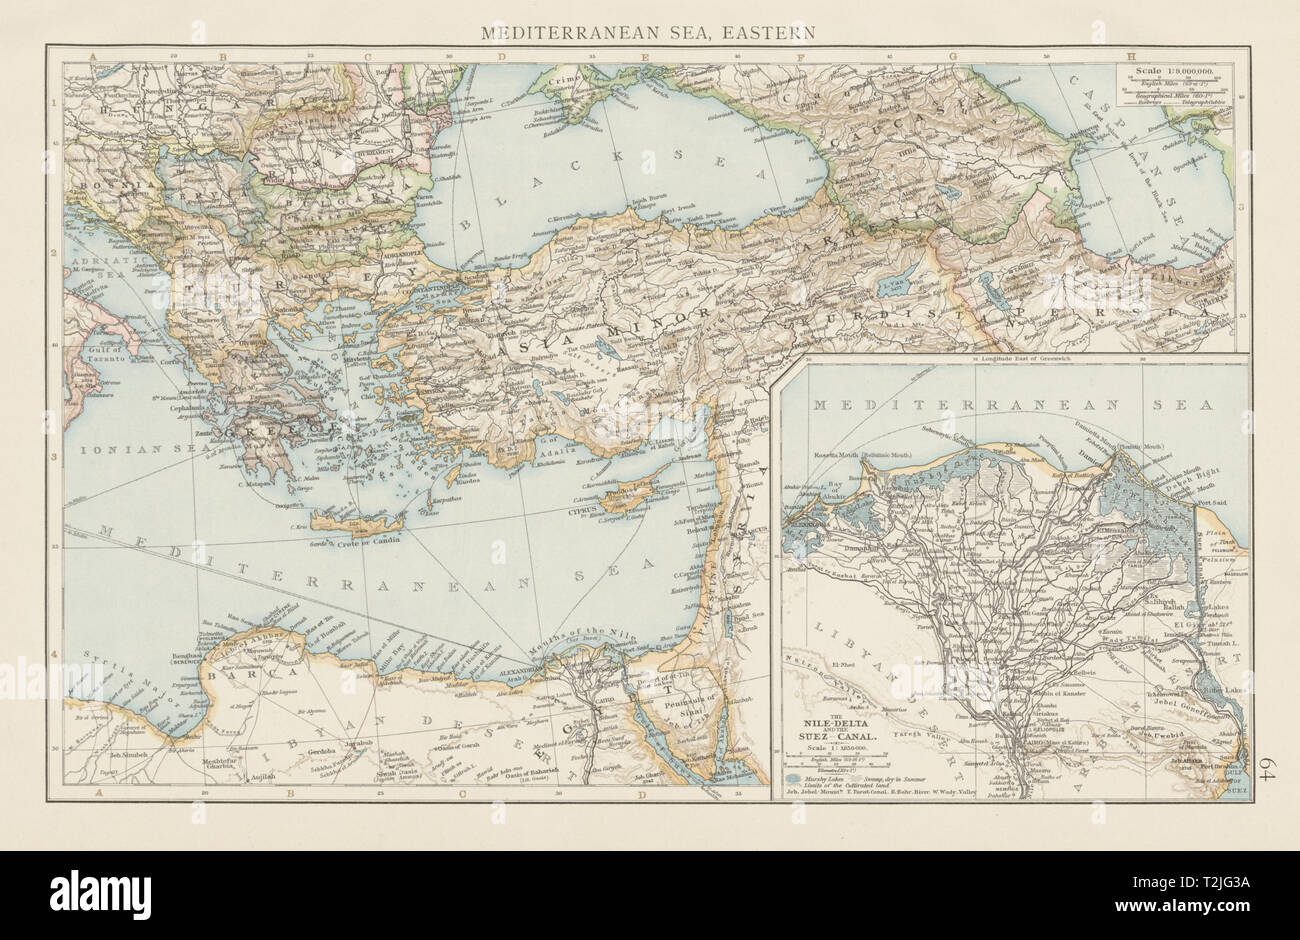 Map of Eastern Mediterranean